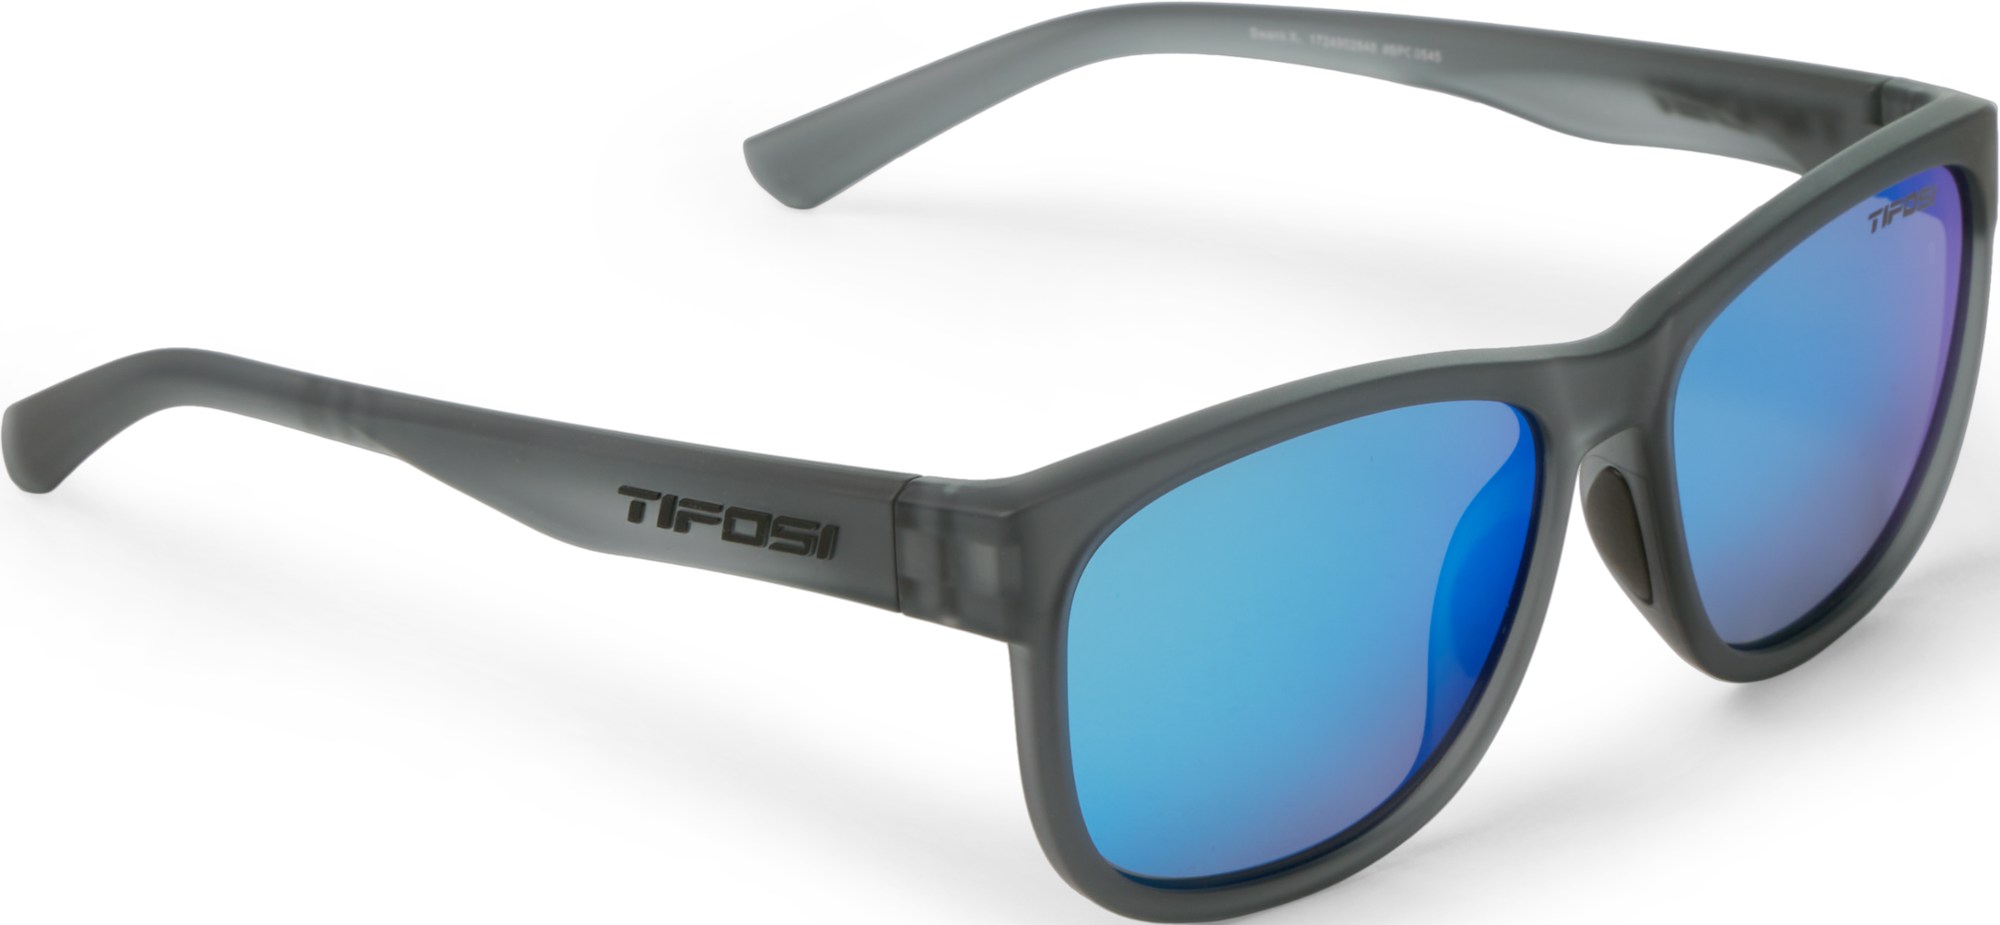 Поляризованные солнцезащитные очки Swank XL Tifosi, серый фото